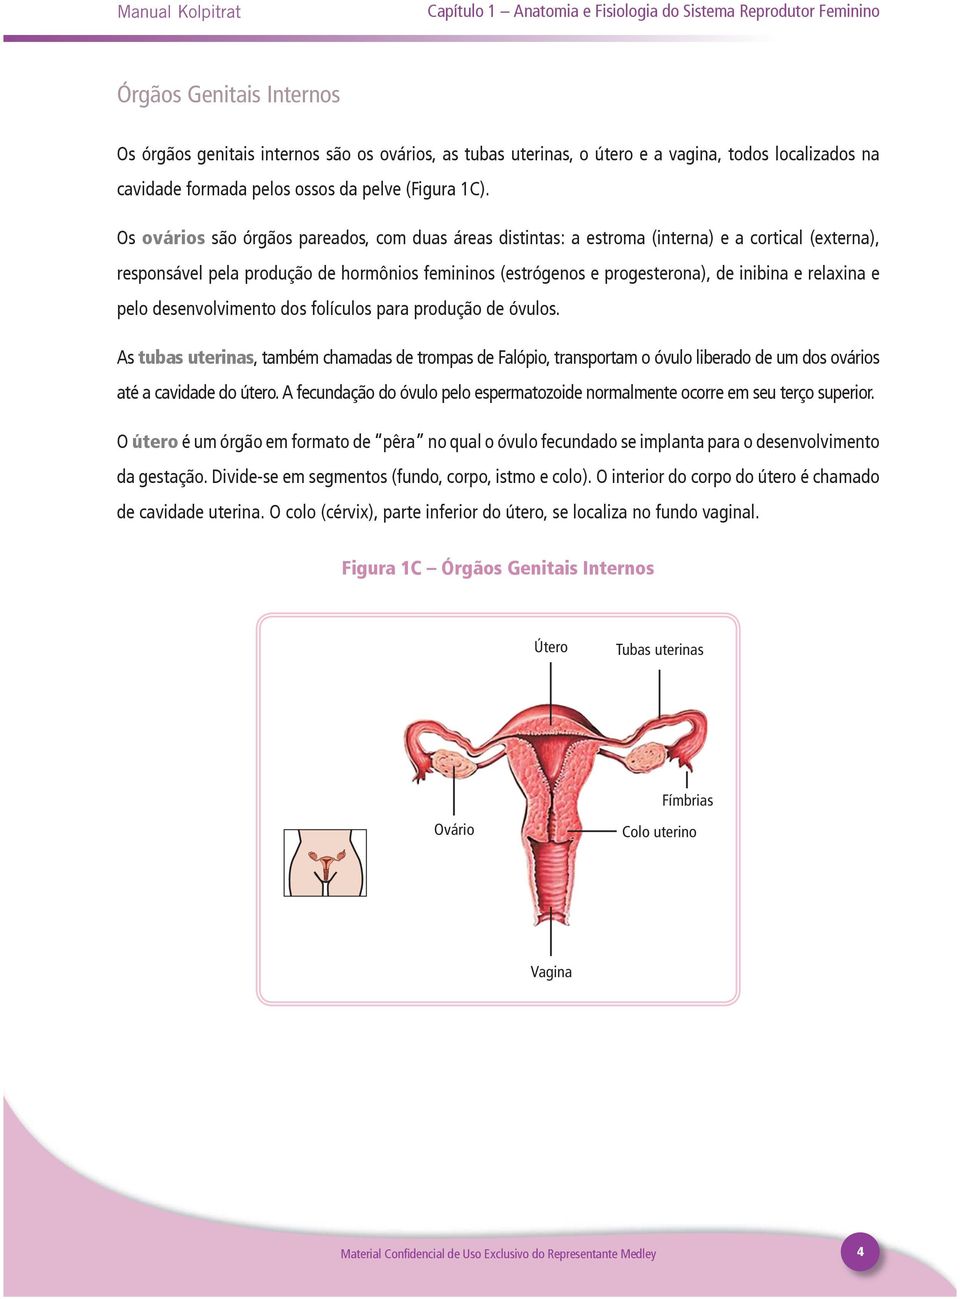 Os ovários são órgãos pareados, com duas áreas distintas: a estroma (interna) e a cortical (externa), responsável pela produção de hormônios femininos (estrógenos e progesterona), de inibina e